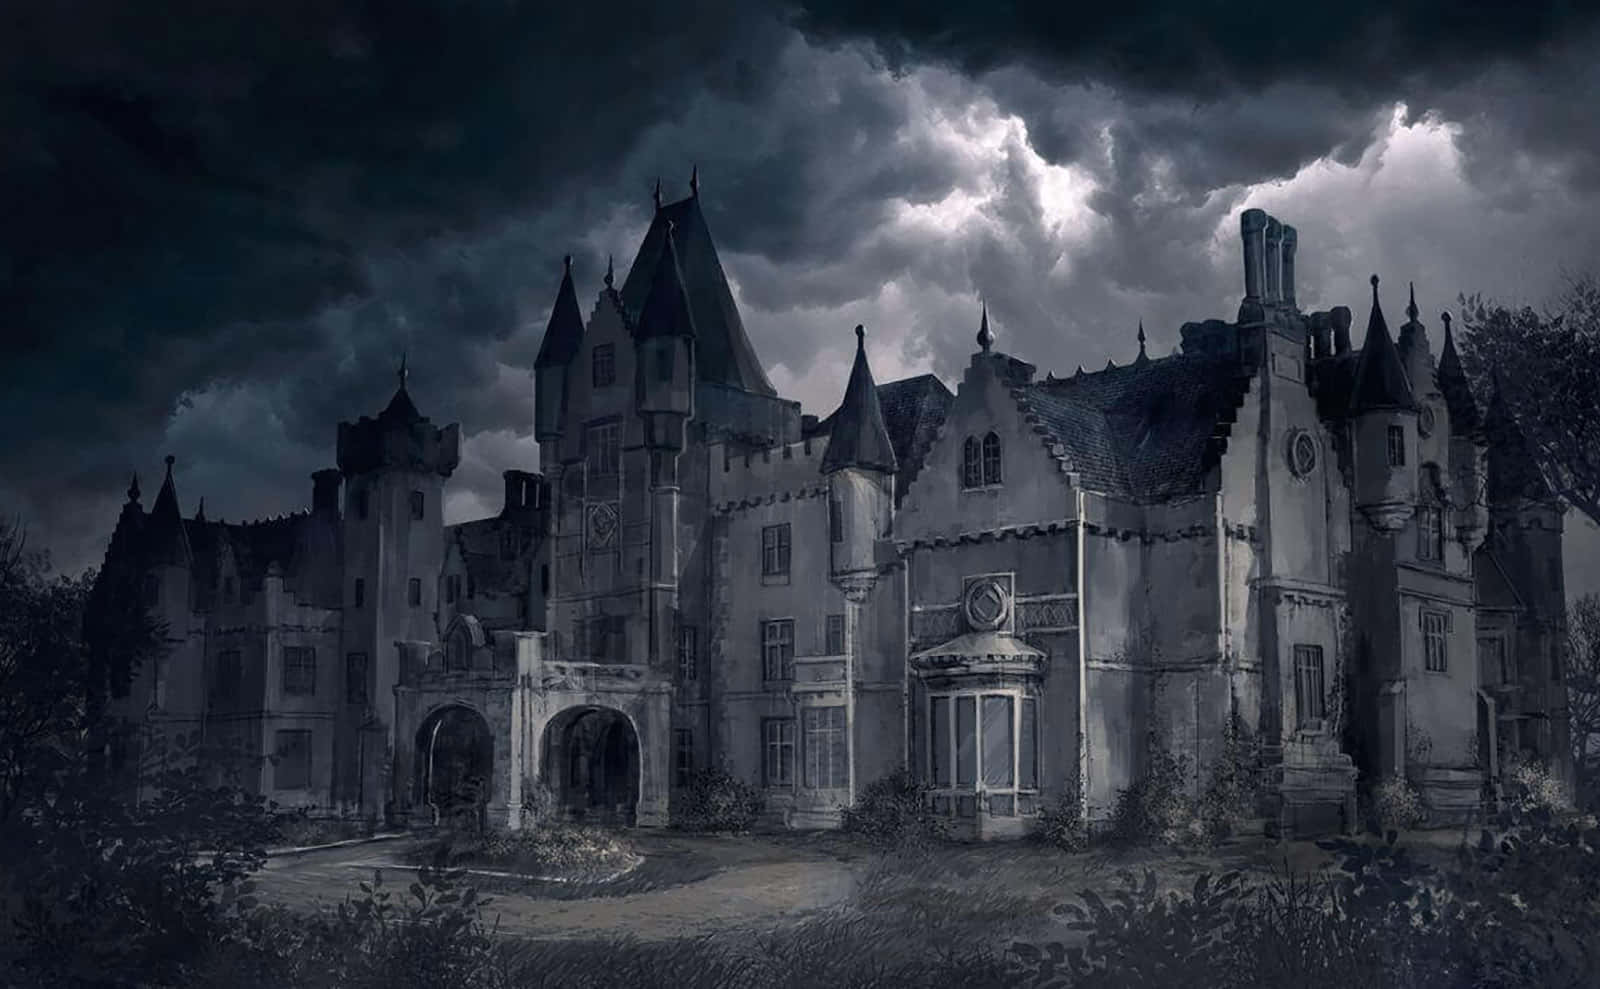 Gotiske billeder af slotte i den natte himmel